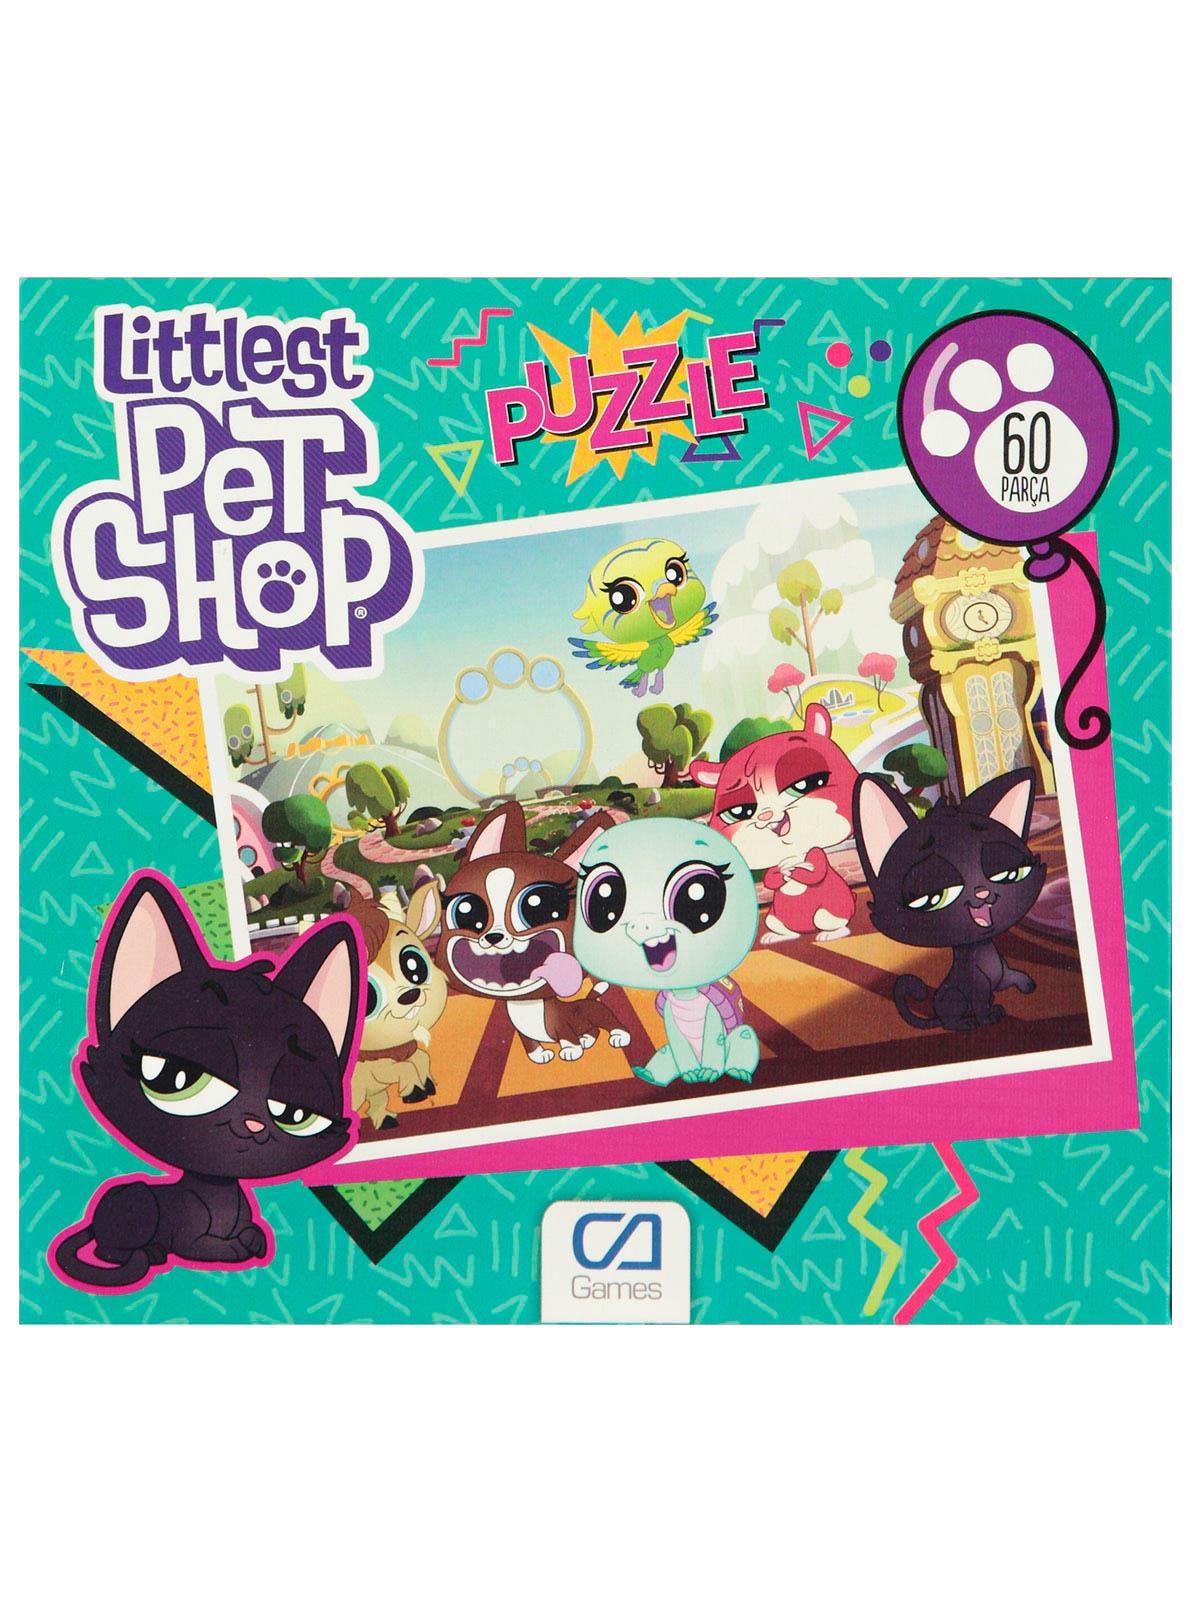 CA Oyuncak Littlest Pet Shop Puzzle 60 Parça